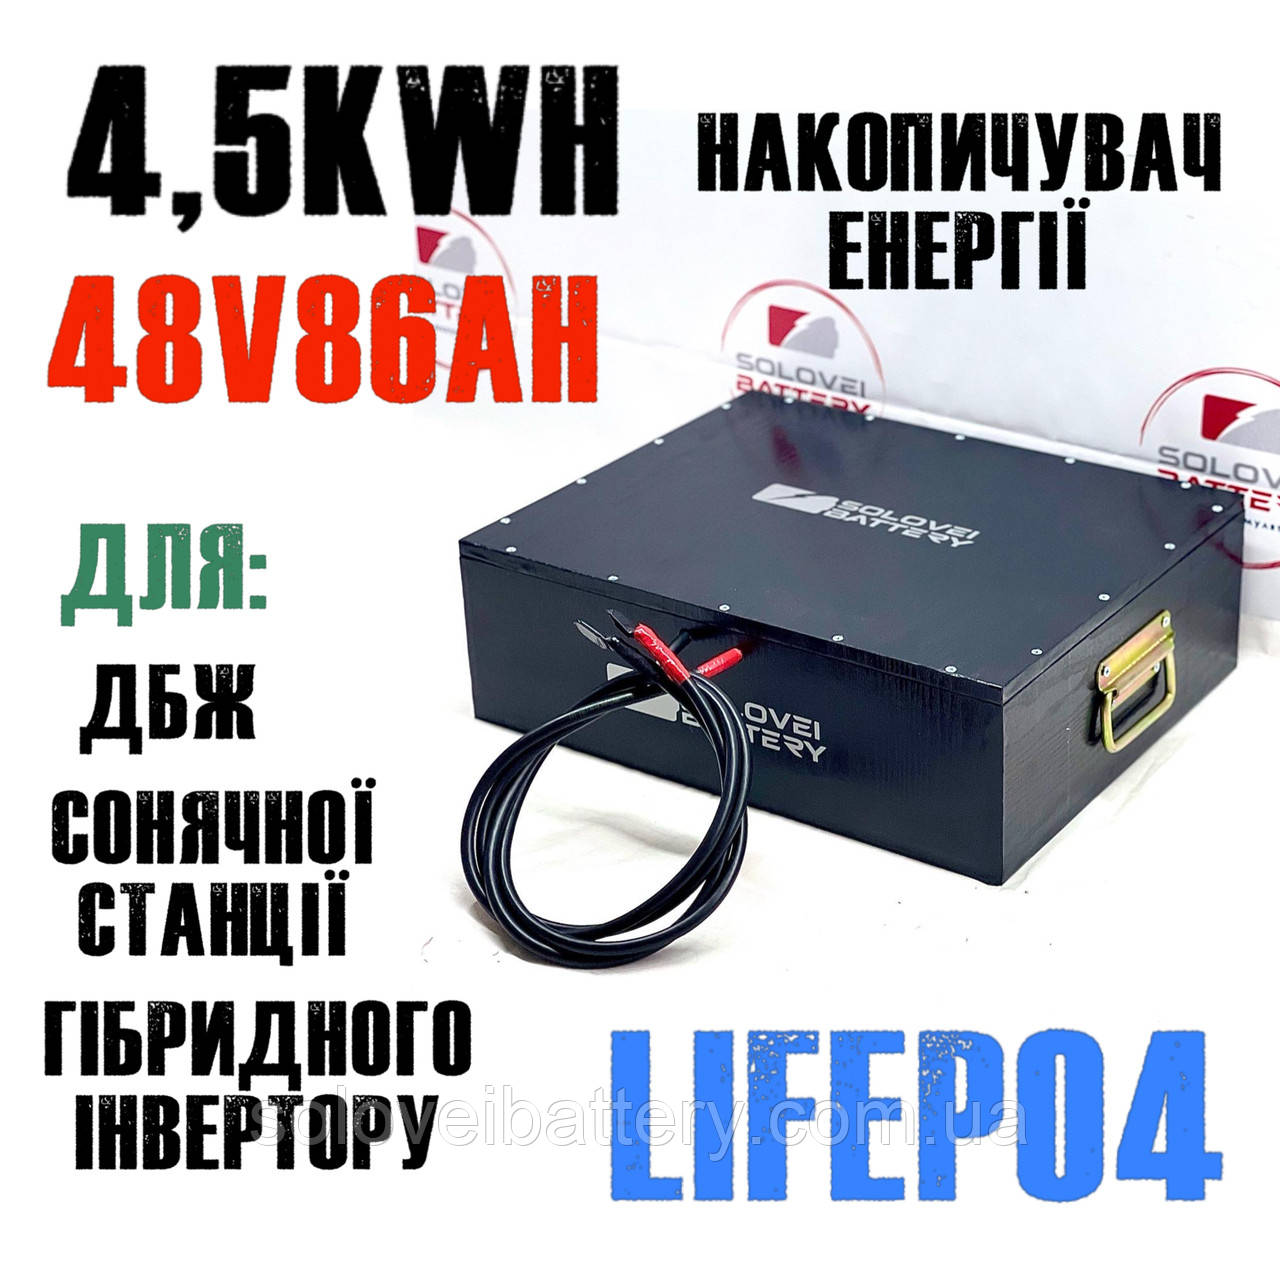 LiFePo4 48 в 86ач 4.5kW/h для ДБЖ сонячних станцій, накопичення енергії резервного живлення UPS ДБЖ